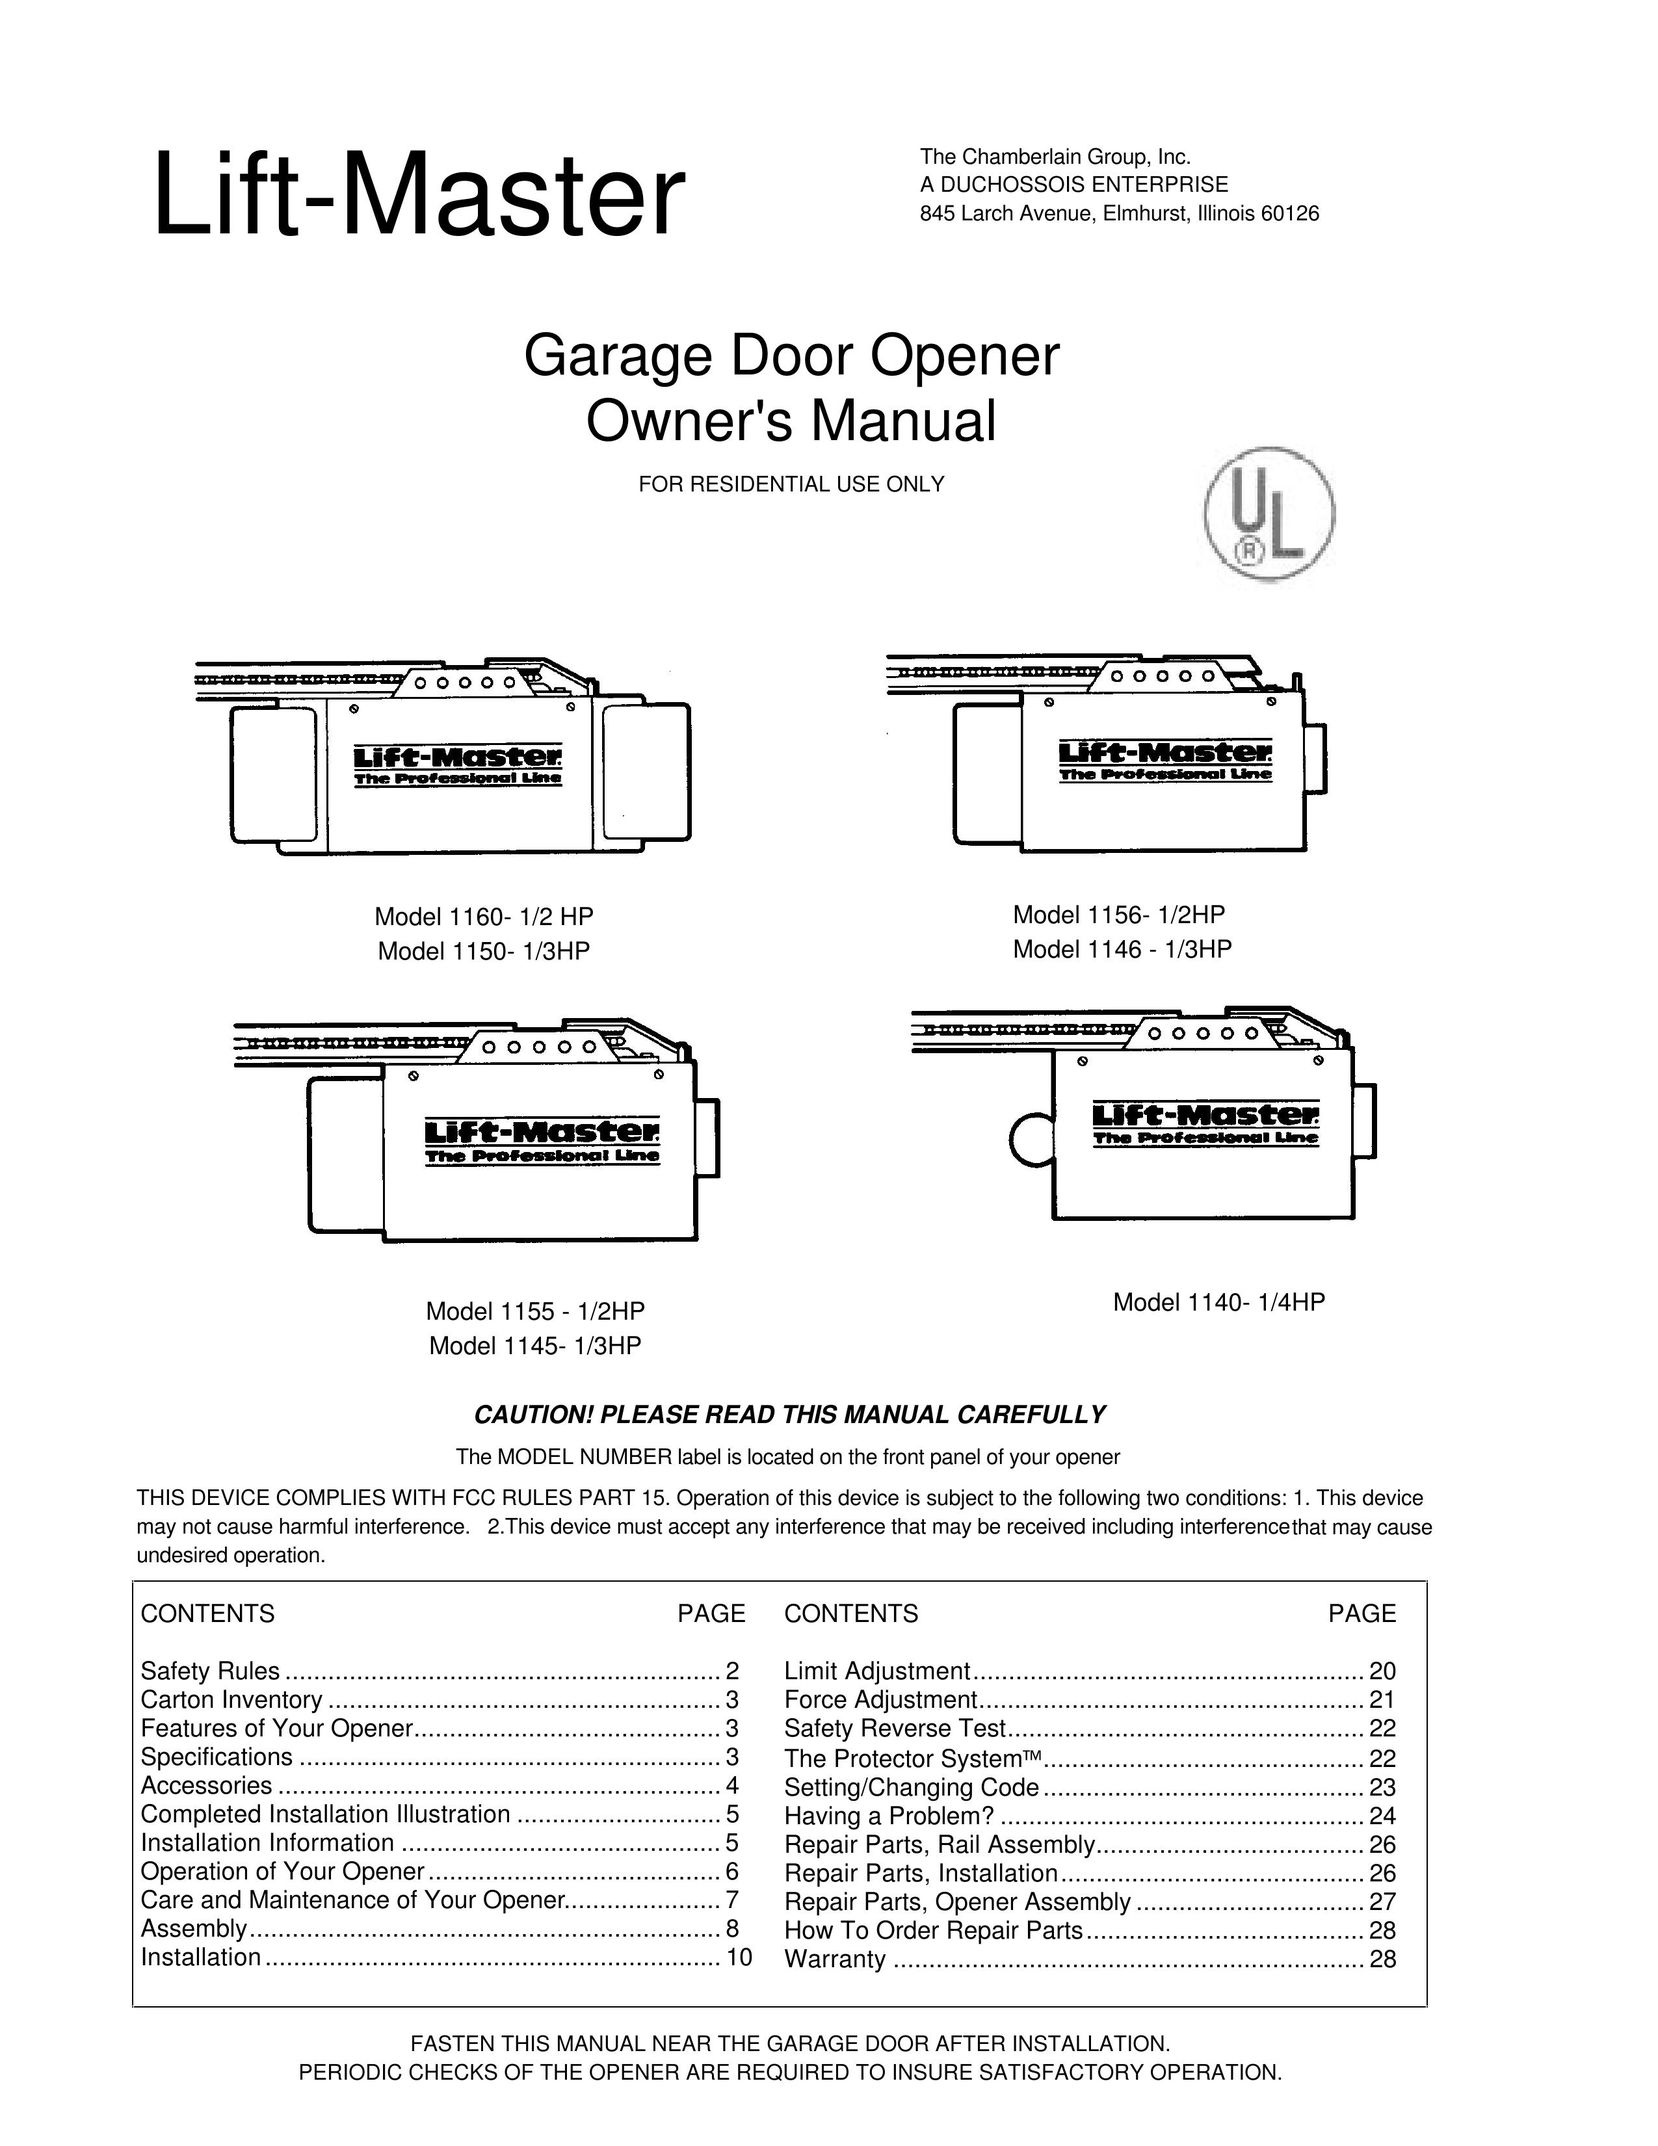 Chamberlain 1156- 1/2HP Garage Door Opener User Manual